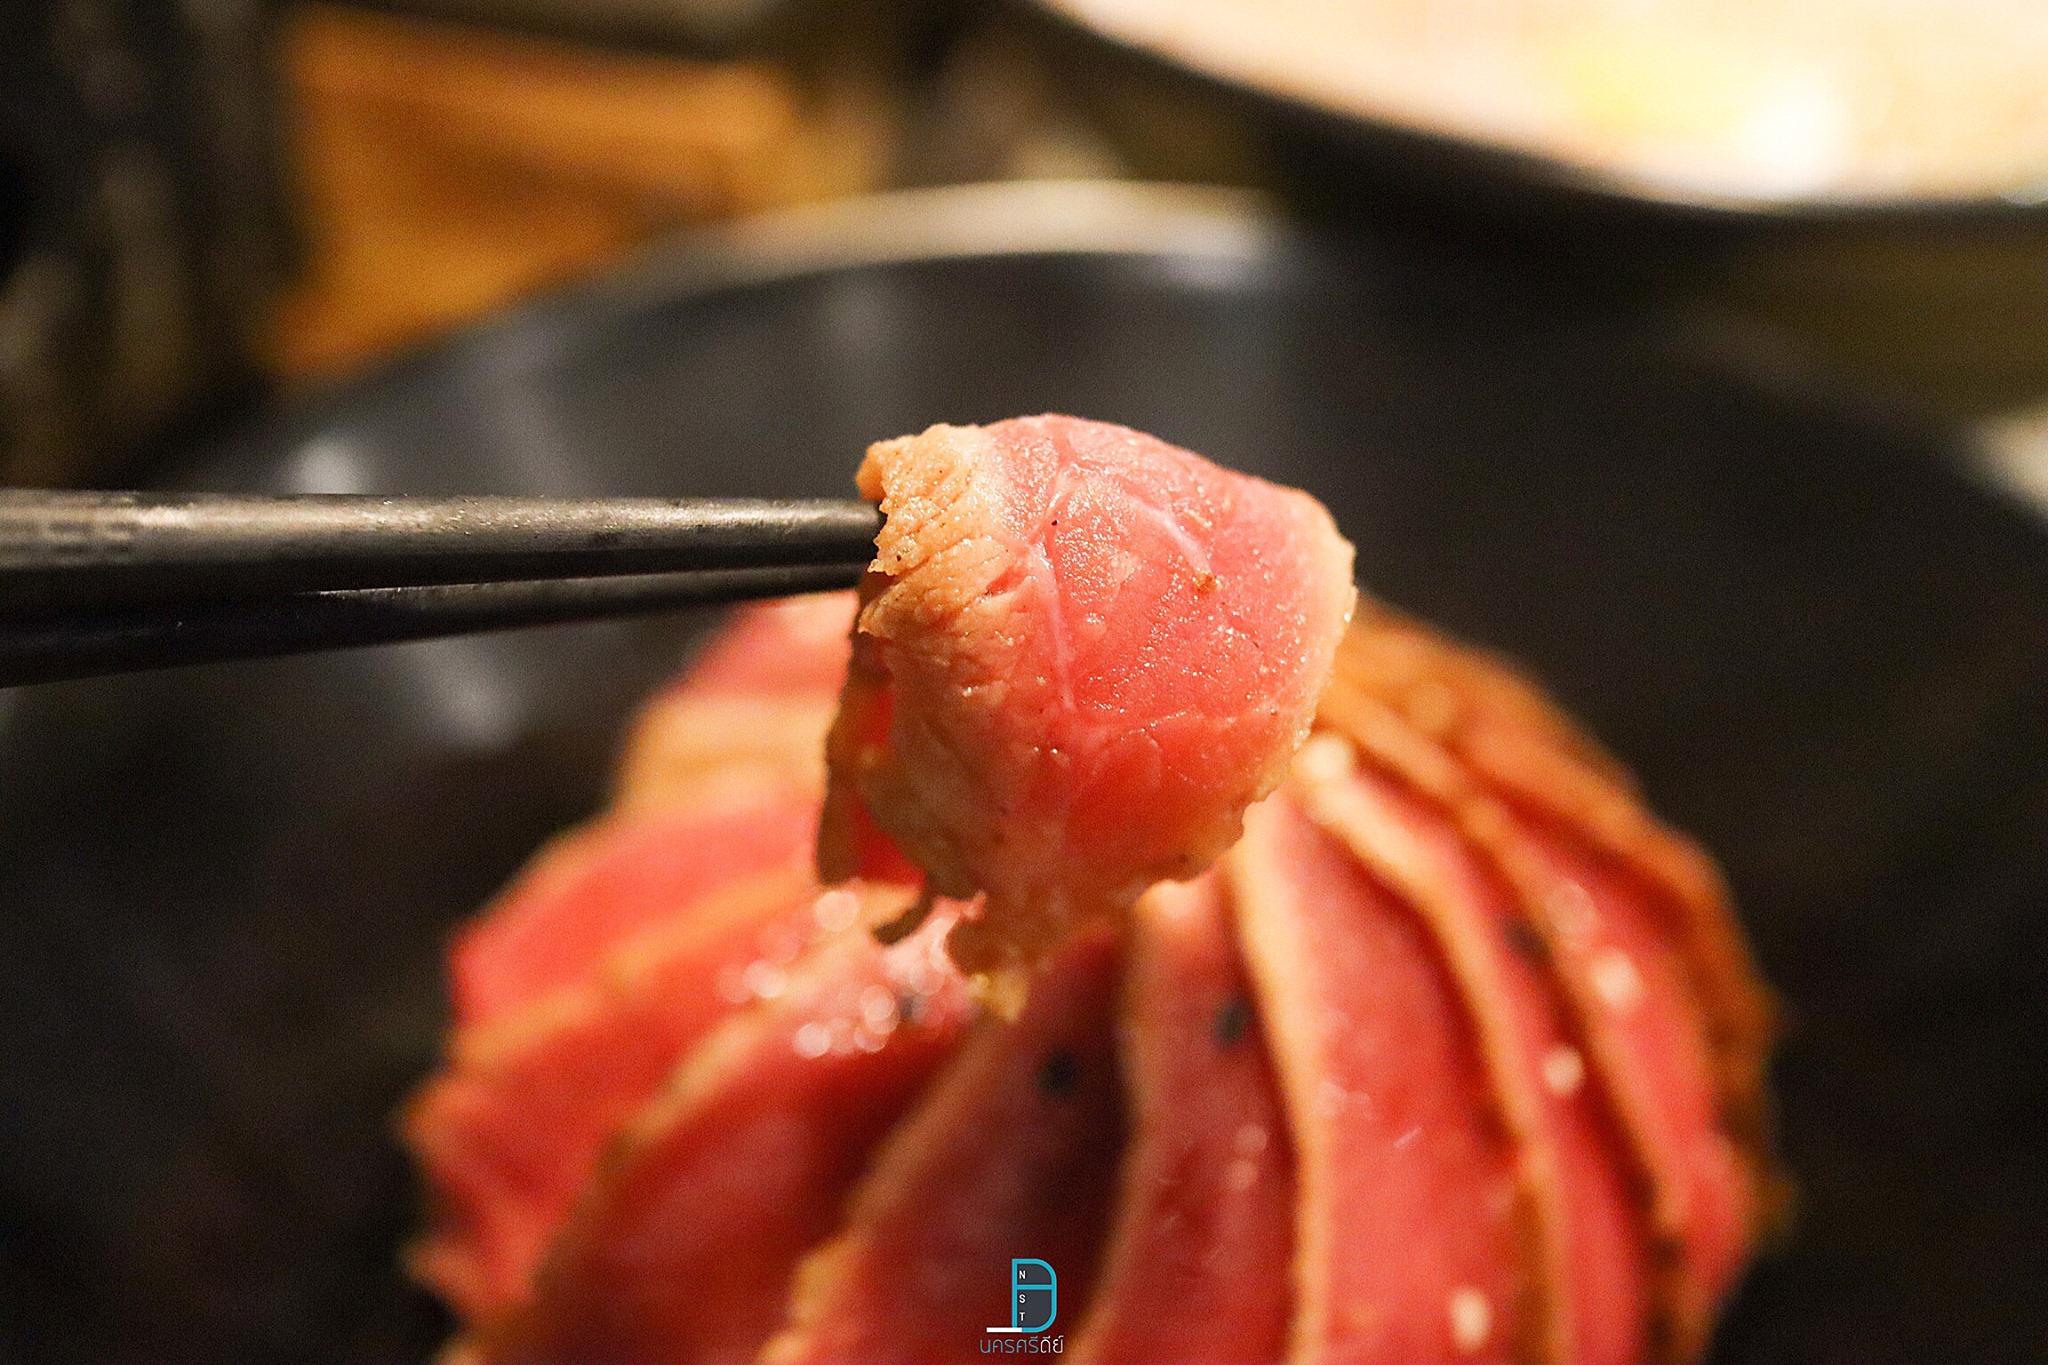  เนื้อย่างมีเดียมแรร์-กินเดี่ยวๆก็อร่อย--แอบไม่กินกับข้าว-555-
 ร้านอาหารญี่ปุ่น,นครศรีธรรมราช,ของกิน,ร้านอร่อย,อำเภอเมือง,กินอะไรดี,ของหรอย,อาหารญี่ปุ่น